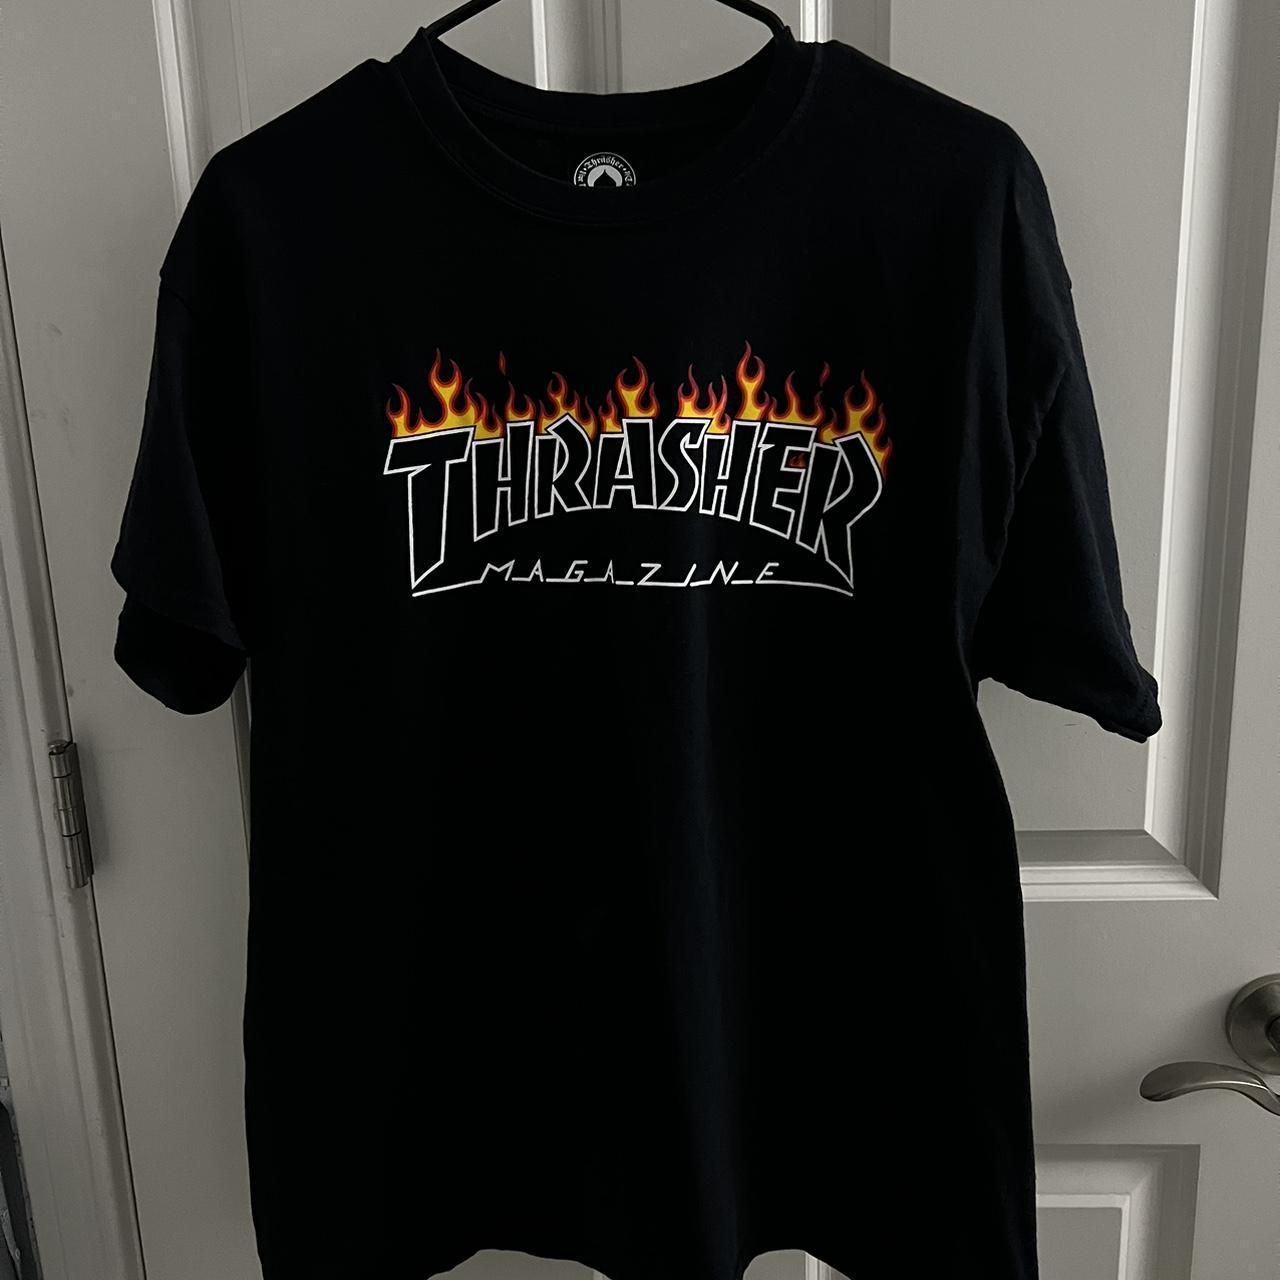 Thrasher Men's Black T-shirt